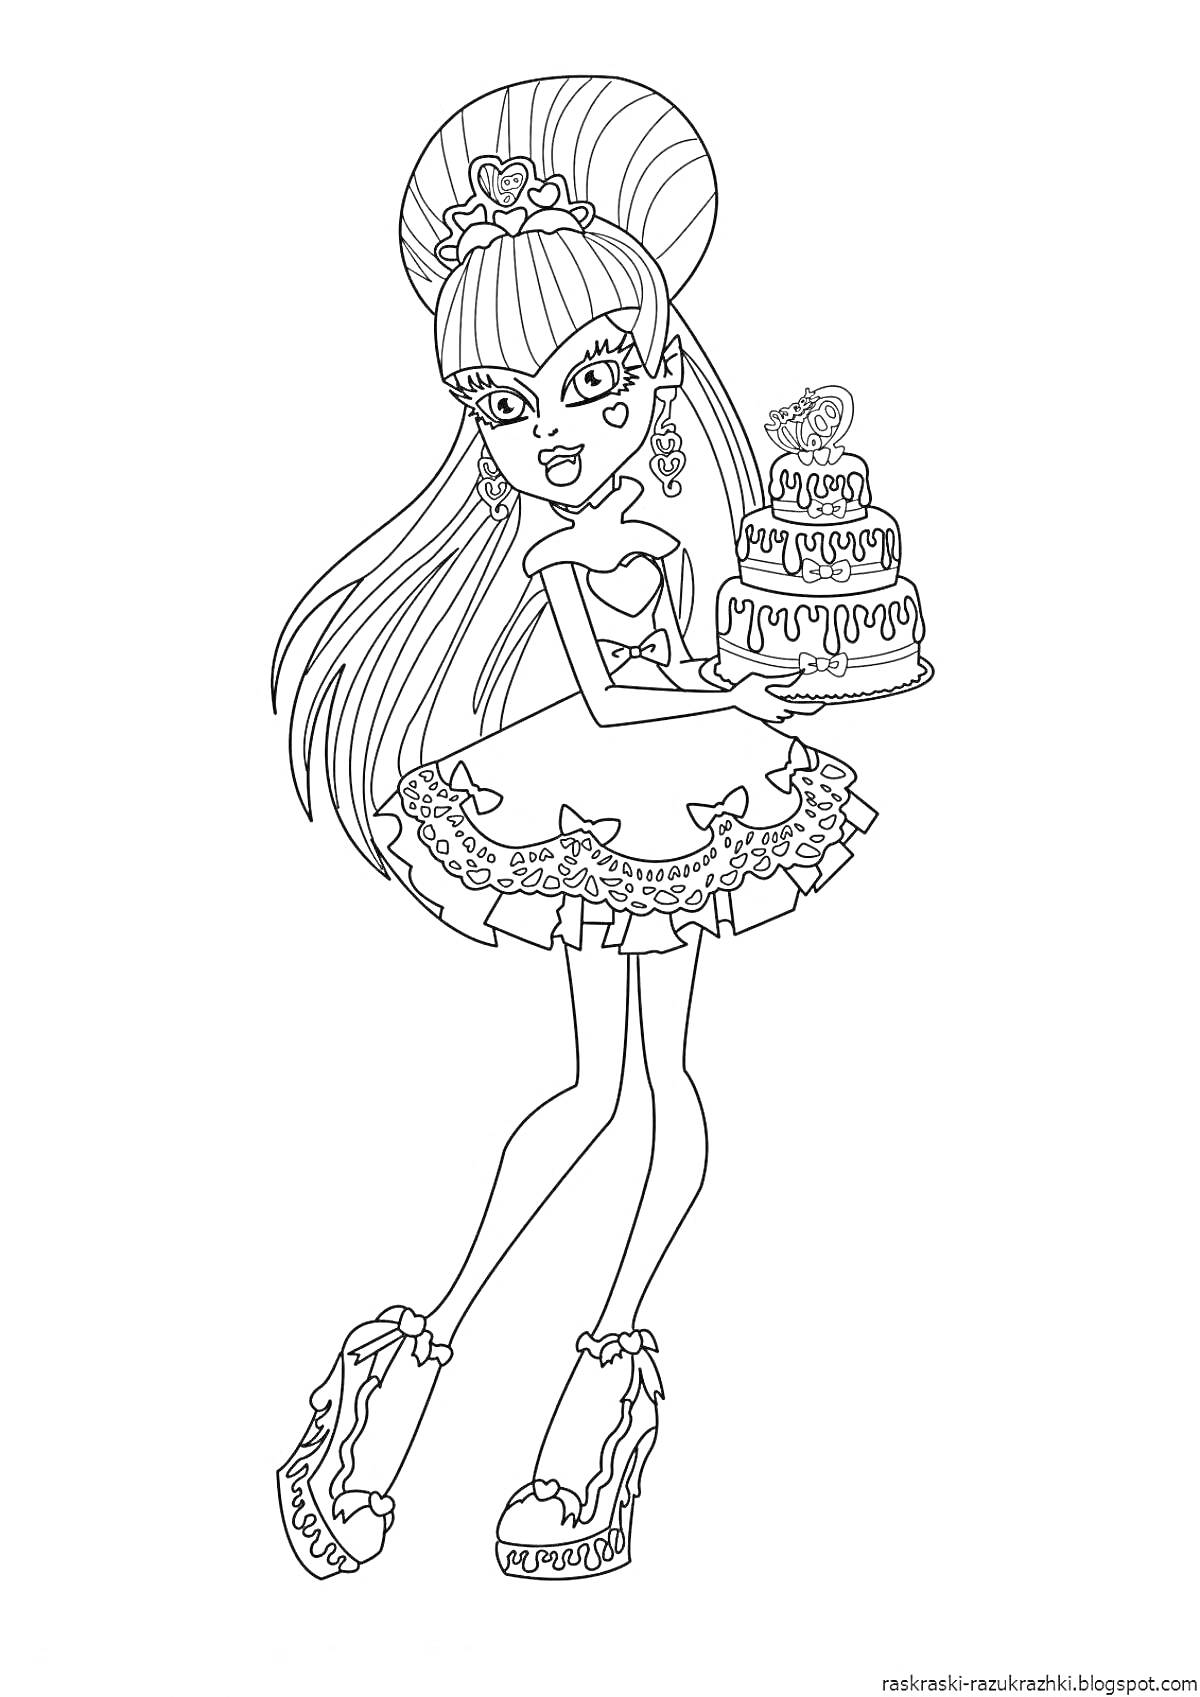 Девушка из Монстер Хай с высокой прической держит торт на несколько ярусов, украшенный глазом